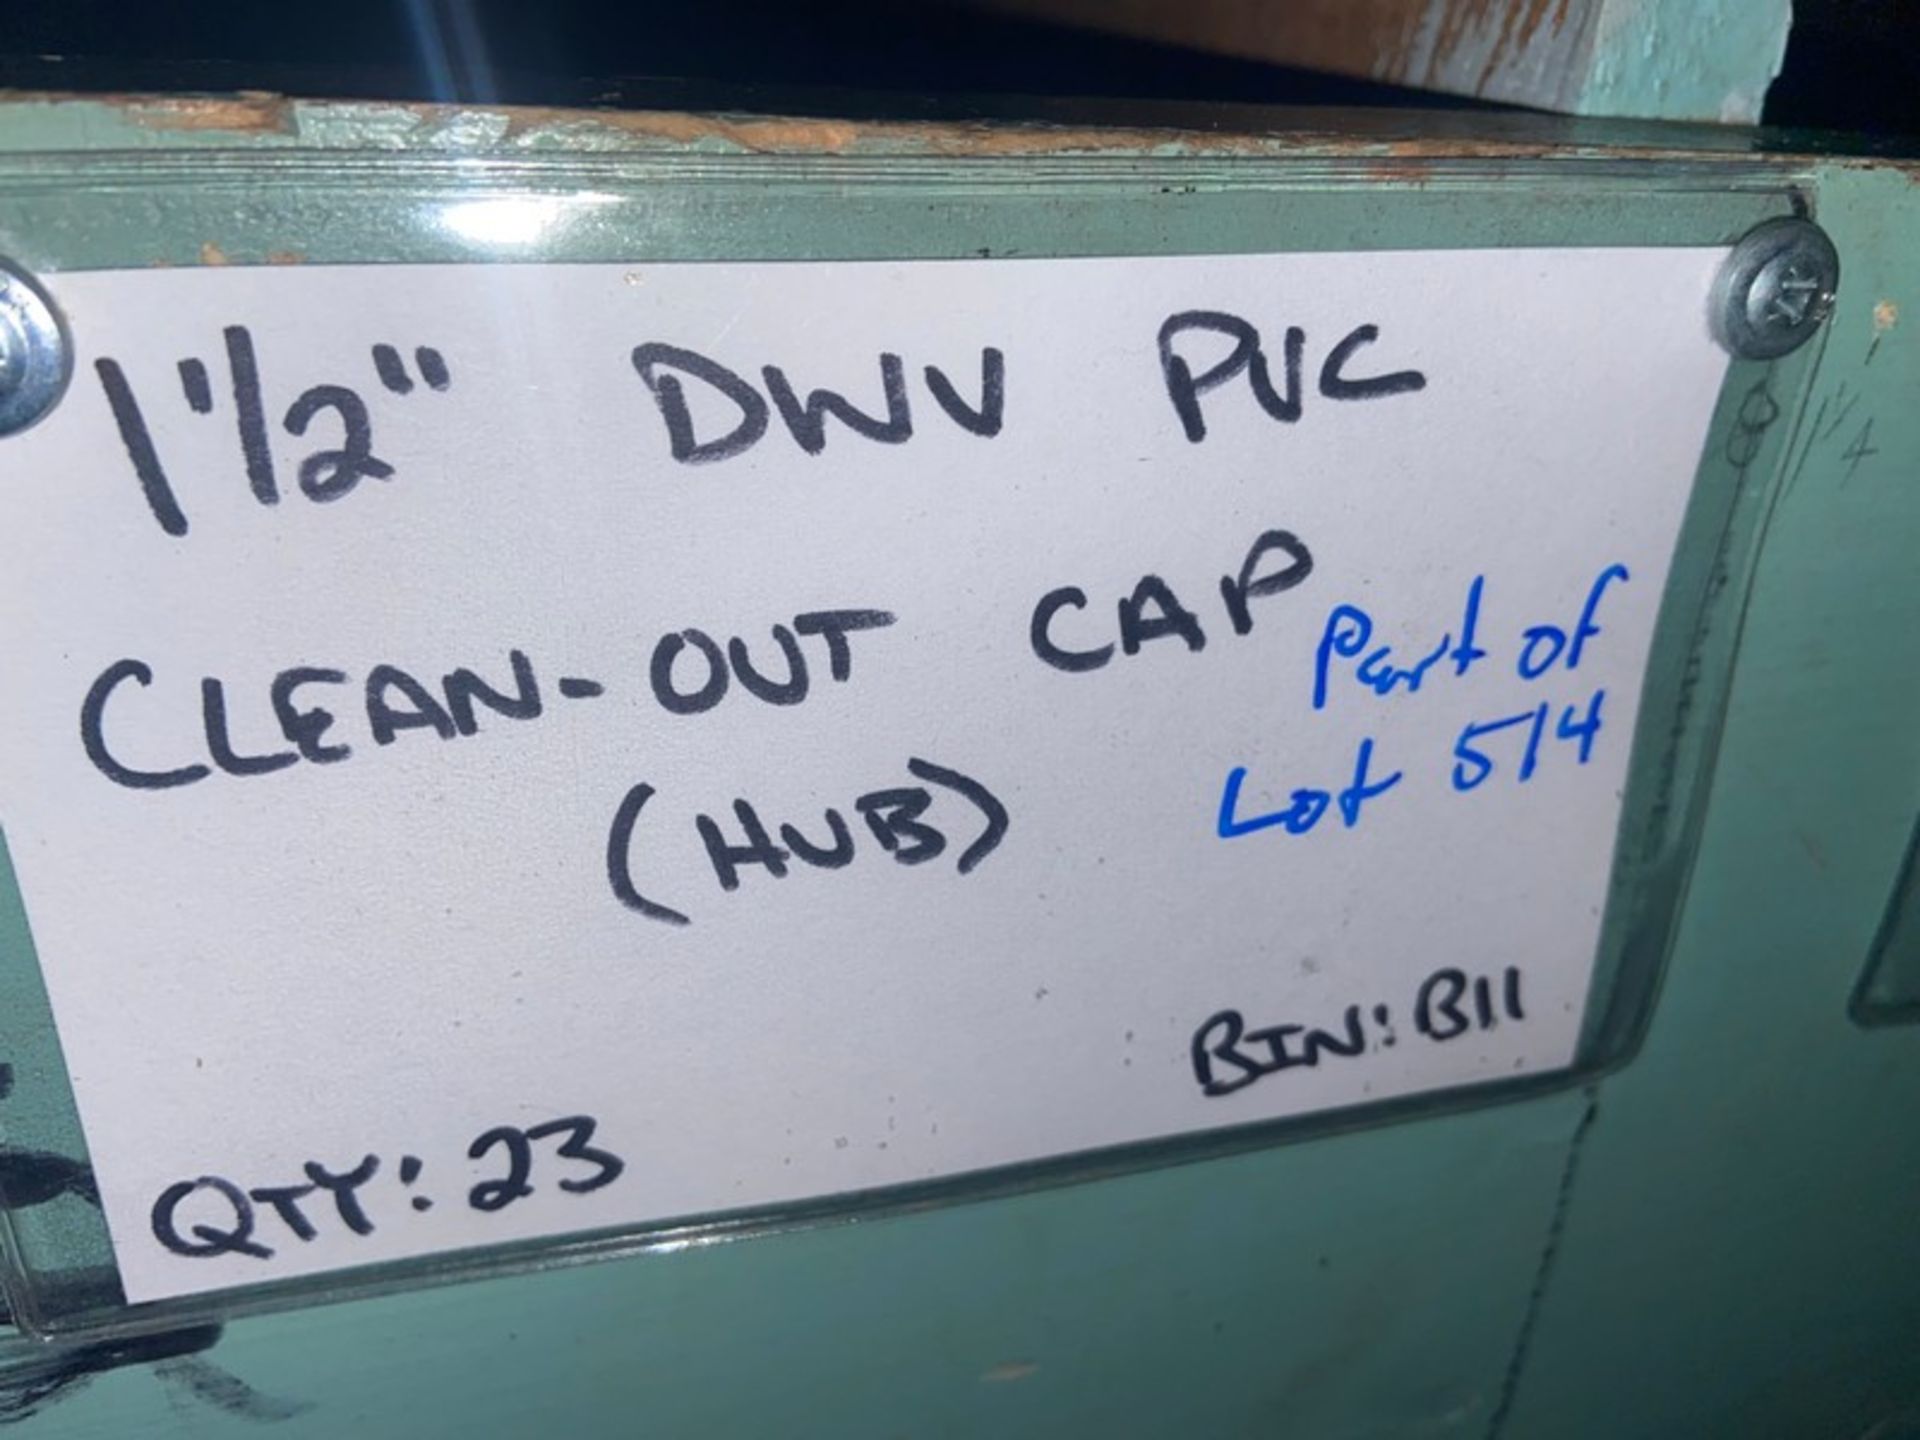 (5) 1 1/2” DWV PVC Clean-out CAP (STREET) (Bin: B11), Includes (23) 1 1/2” DWV PVC Clean-out CAP ( - Bild 4 aus 9